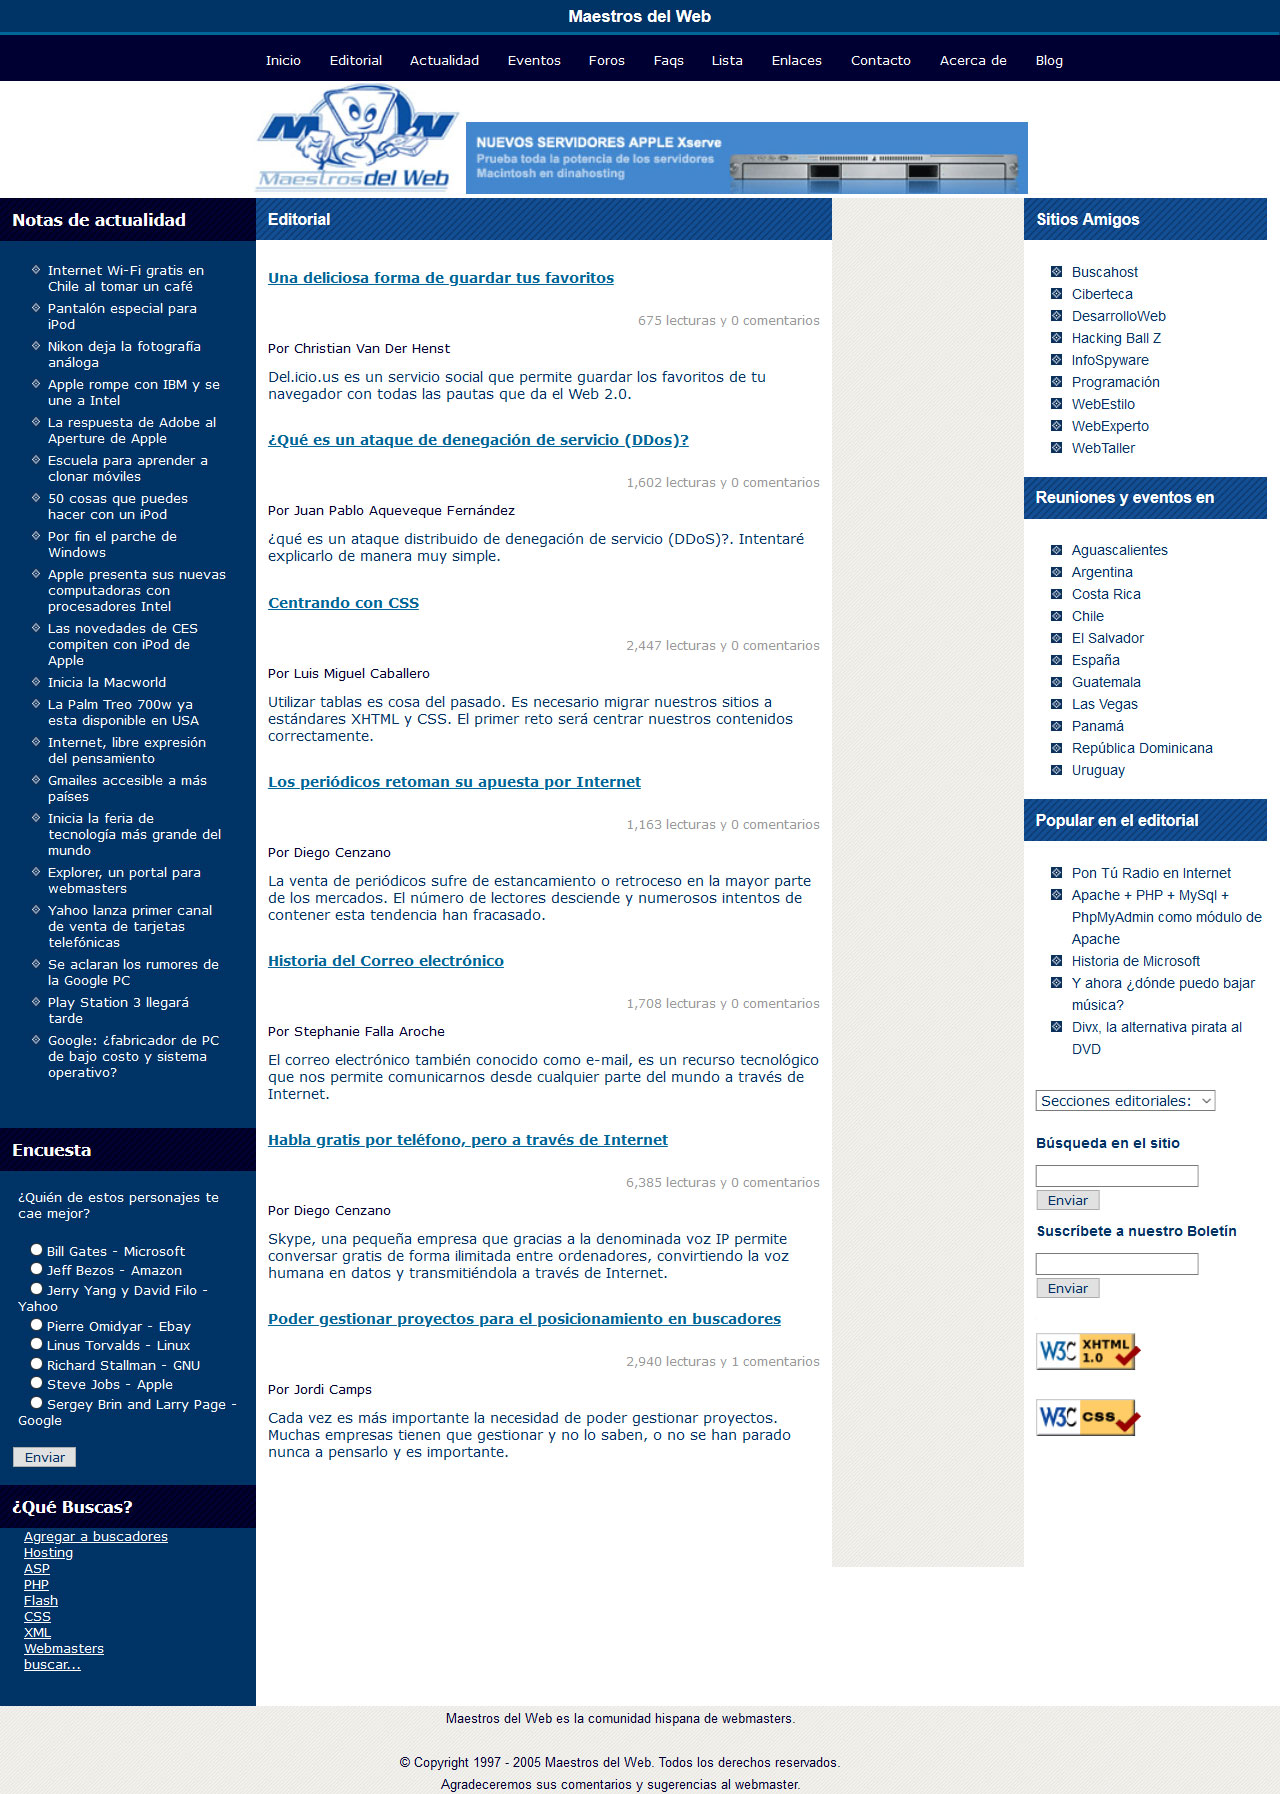 Competencia rediseño portal Maestrosdelweb. Html, Css, Accesibilidad. Año 2006